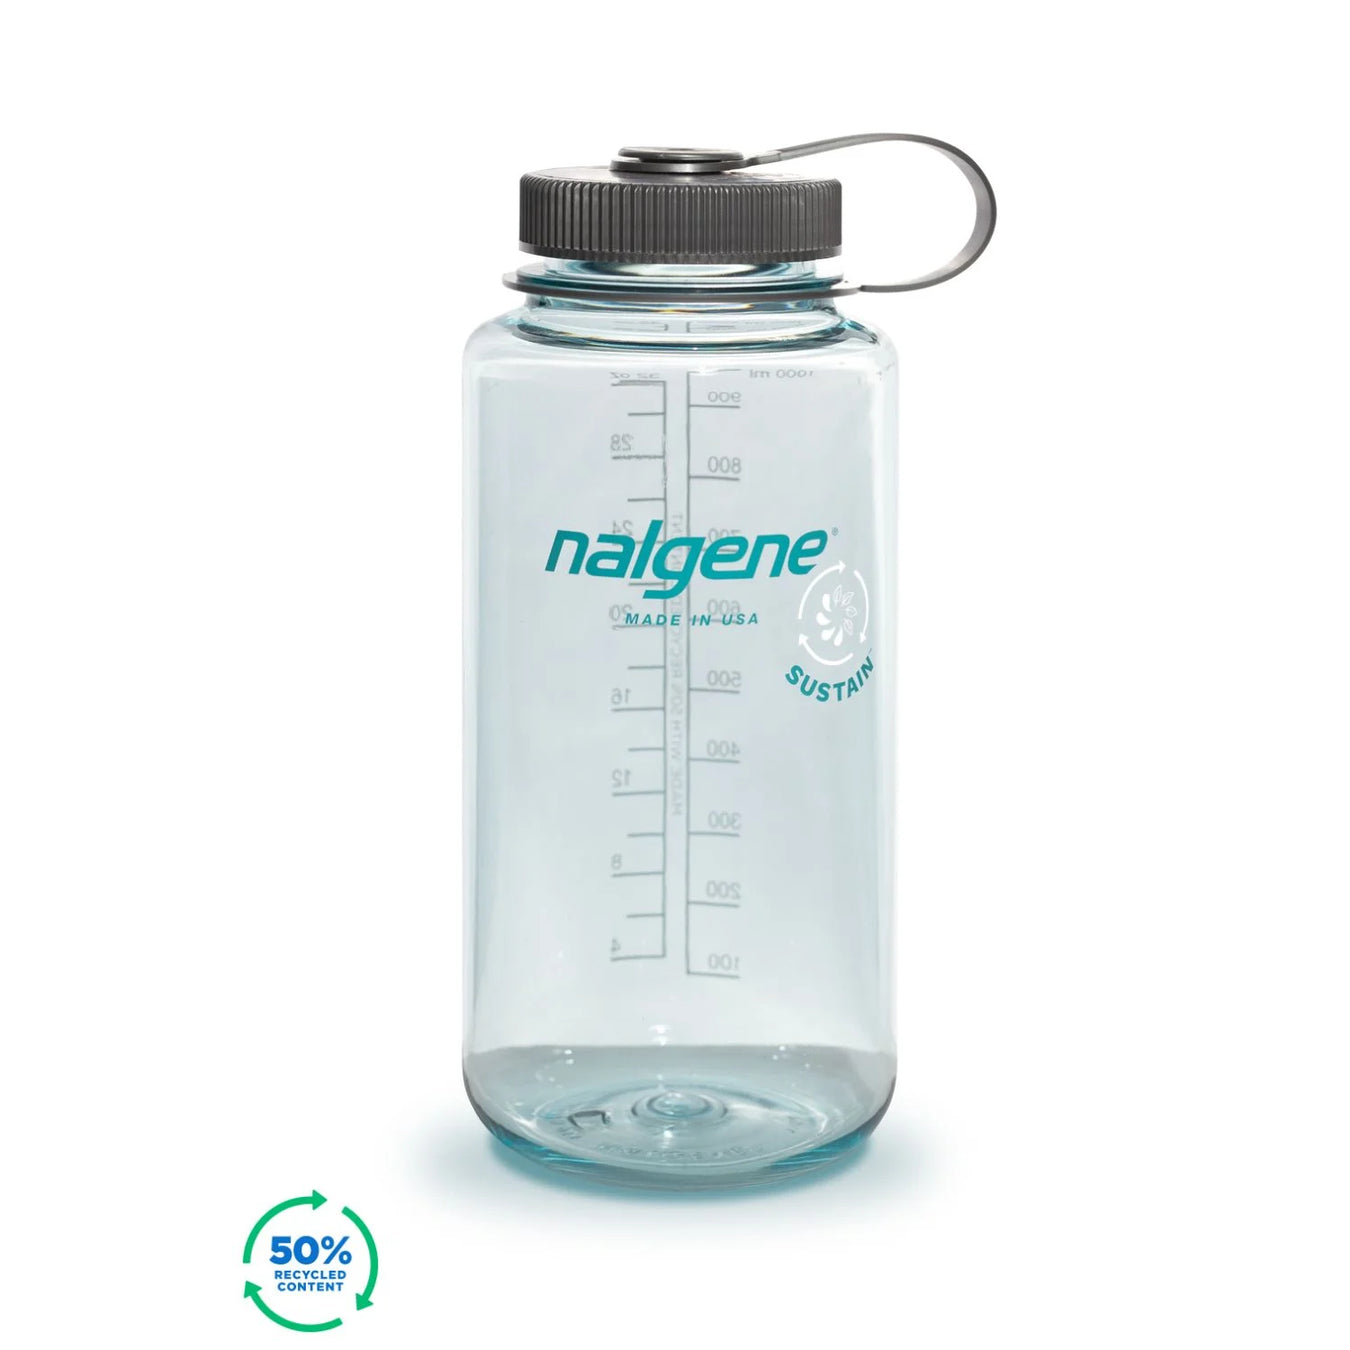 Nalgene's Non-Insulated Bottles